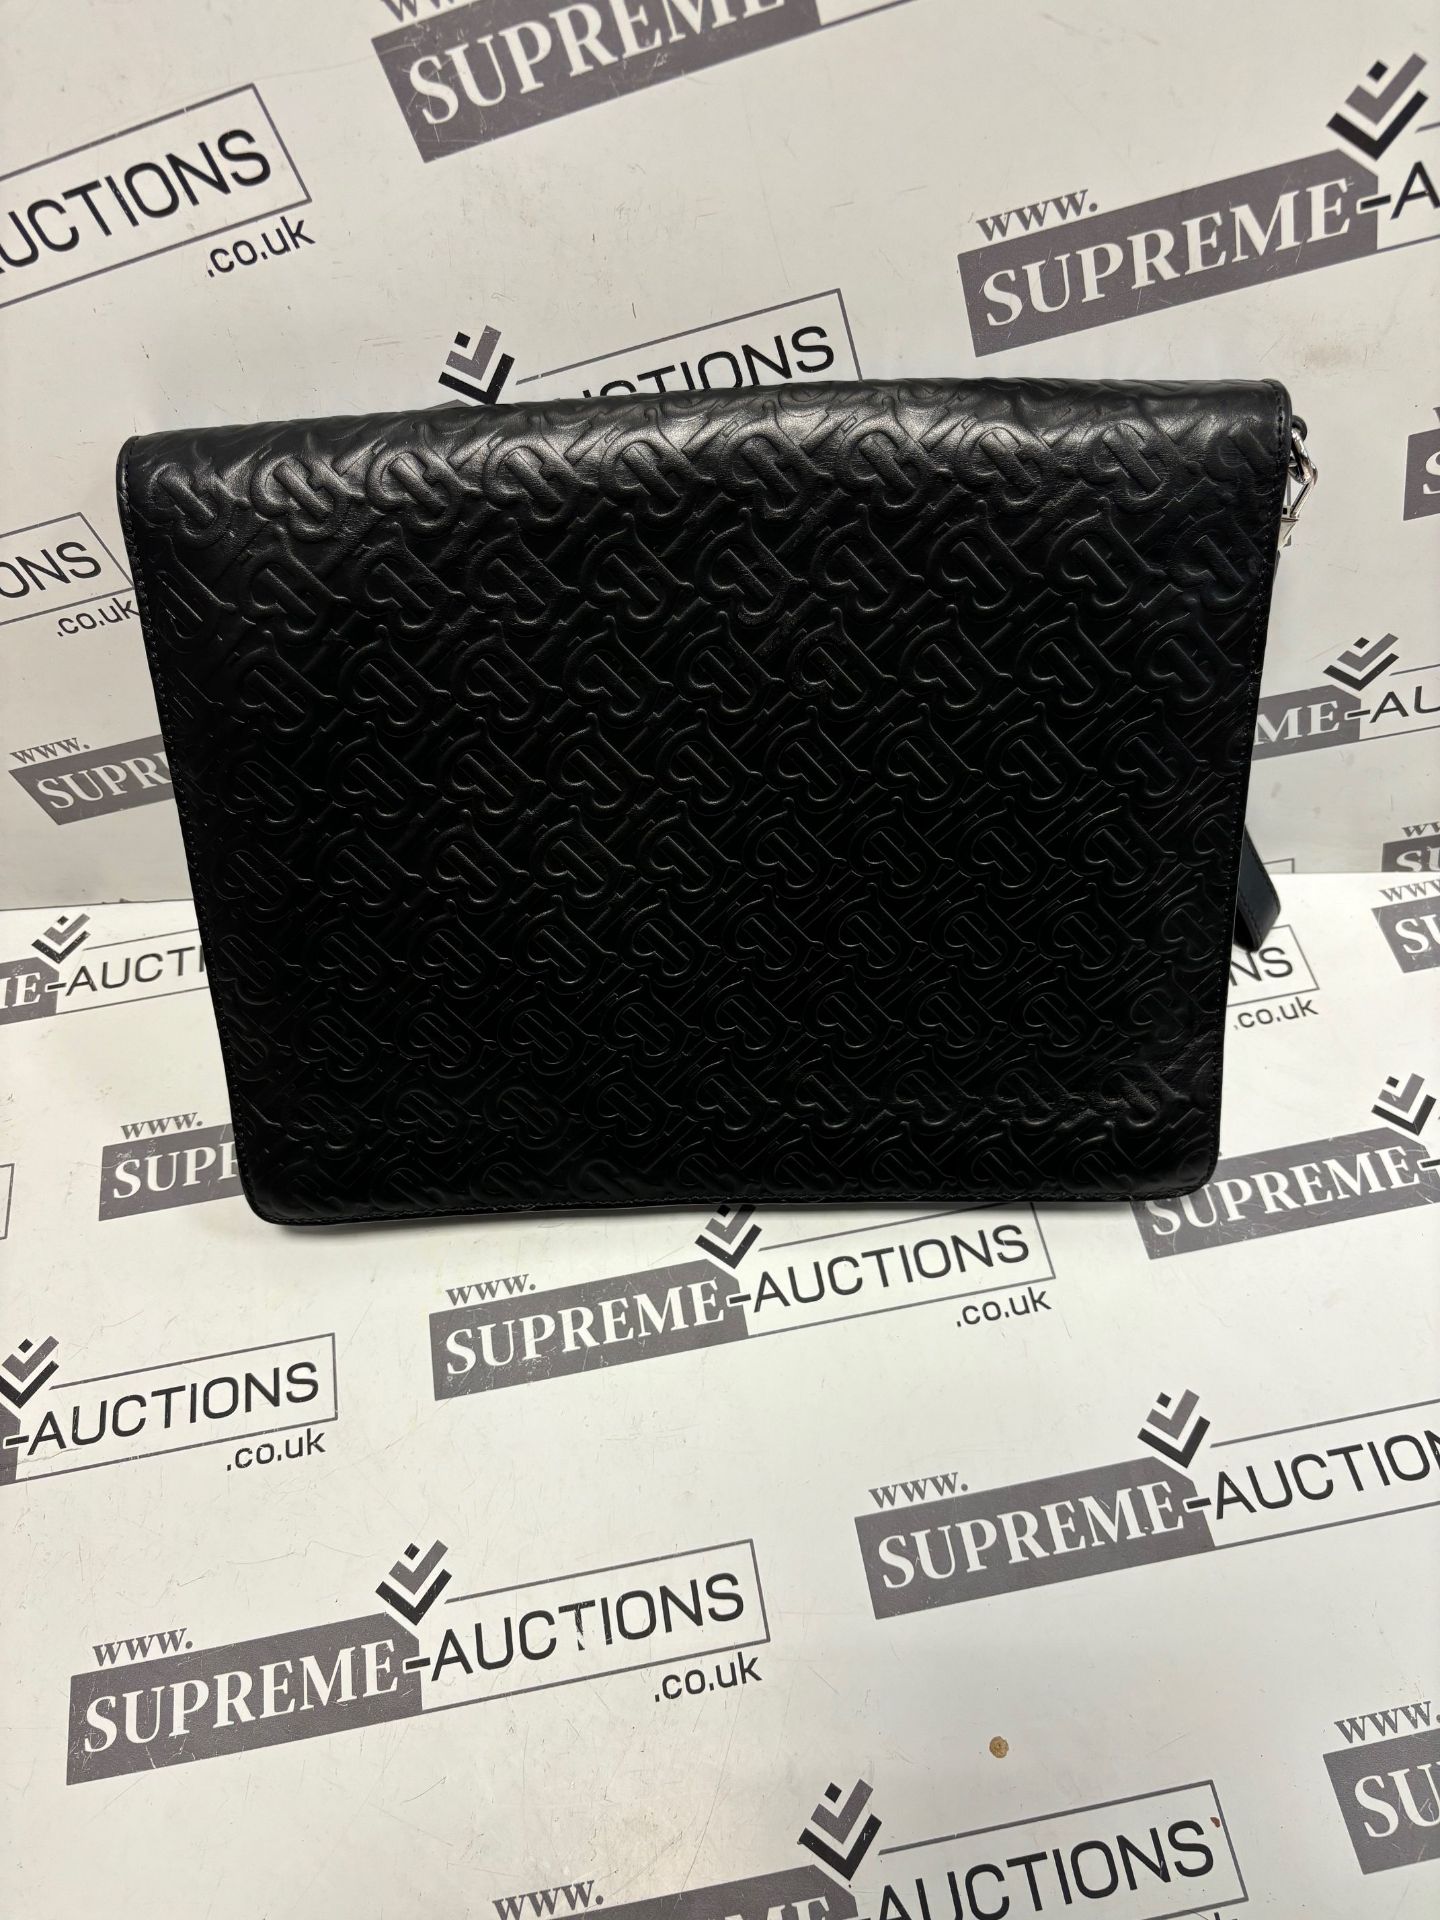 (No Vat) Burberry Envelope clutch, TB embossed leather, Black colour approx 27x35cm. - Bild 3 aus 7